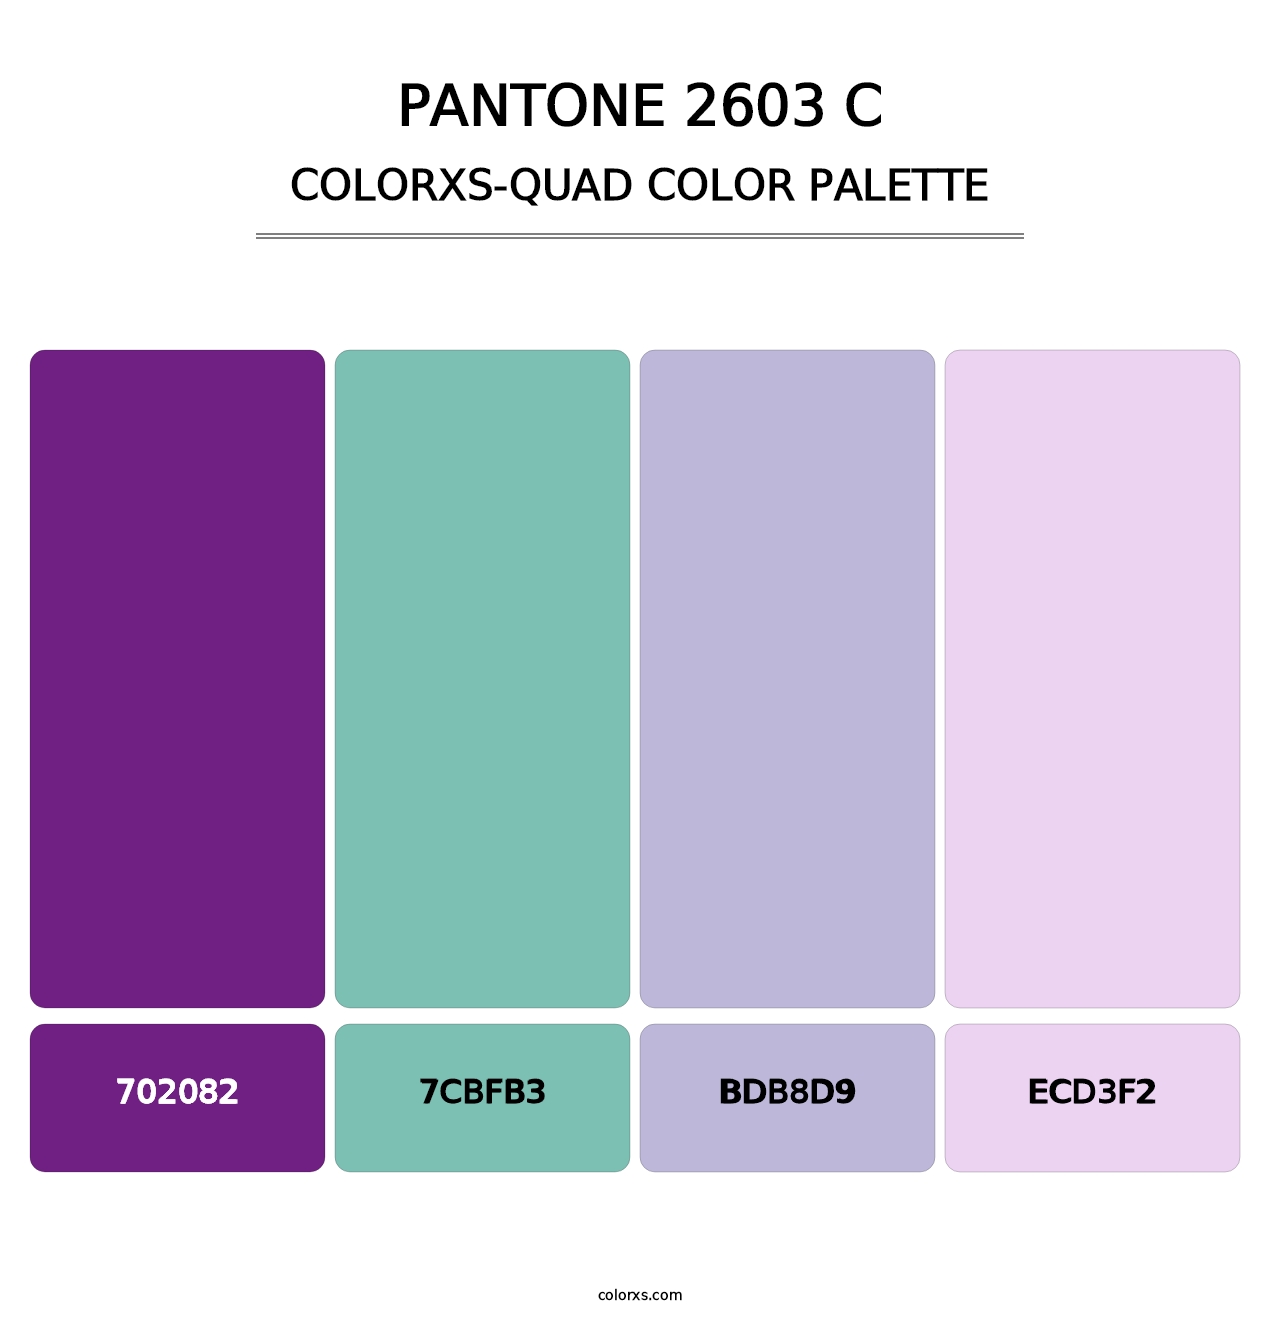 PANTONE 2603 C - Colorxs Quad Palette